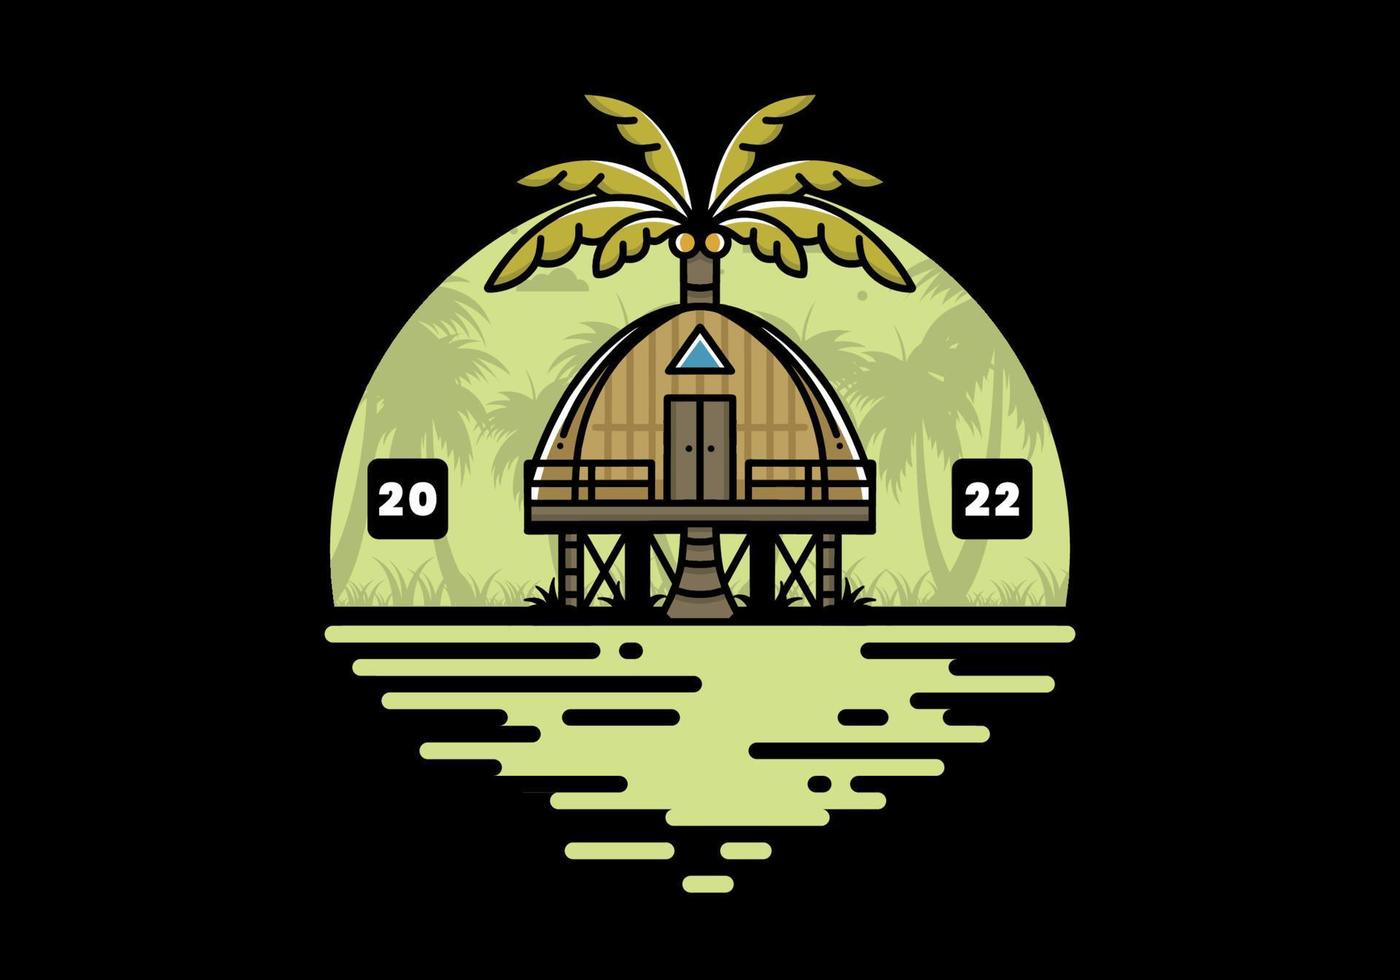 casa de madera con un gran diseño de insignia de árbol de coco vector